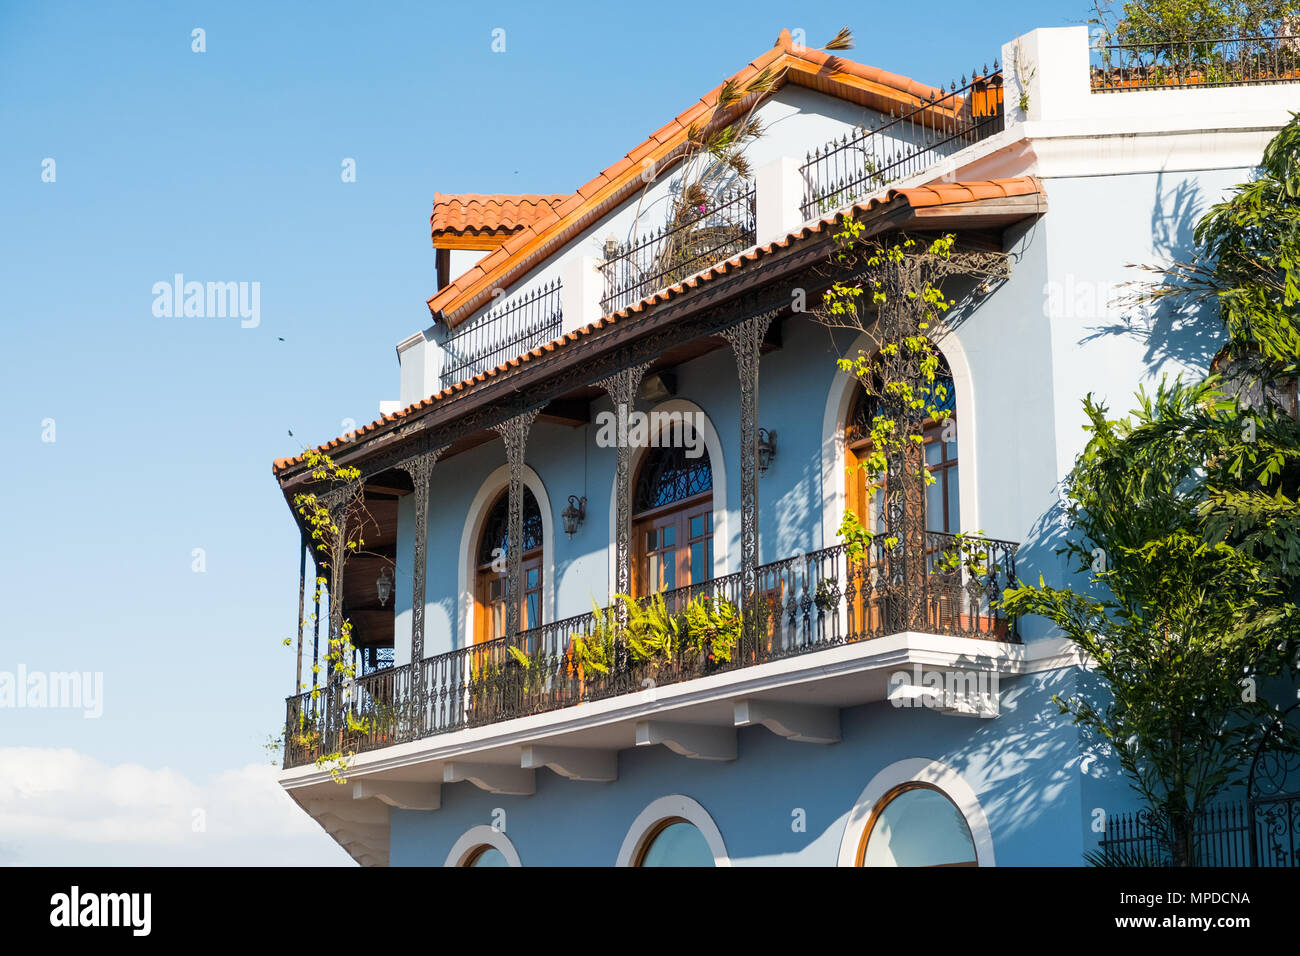 Belle façade de maison, bâtiment historique extérieur - Casco Viejo, Panama City Banque D'Images